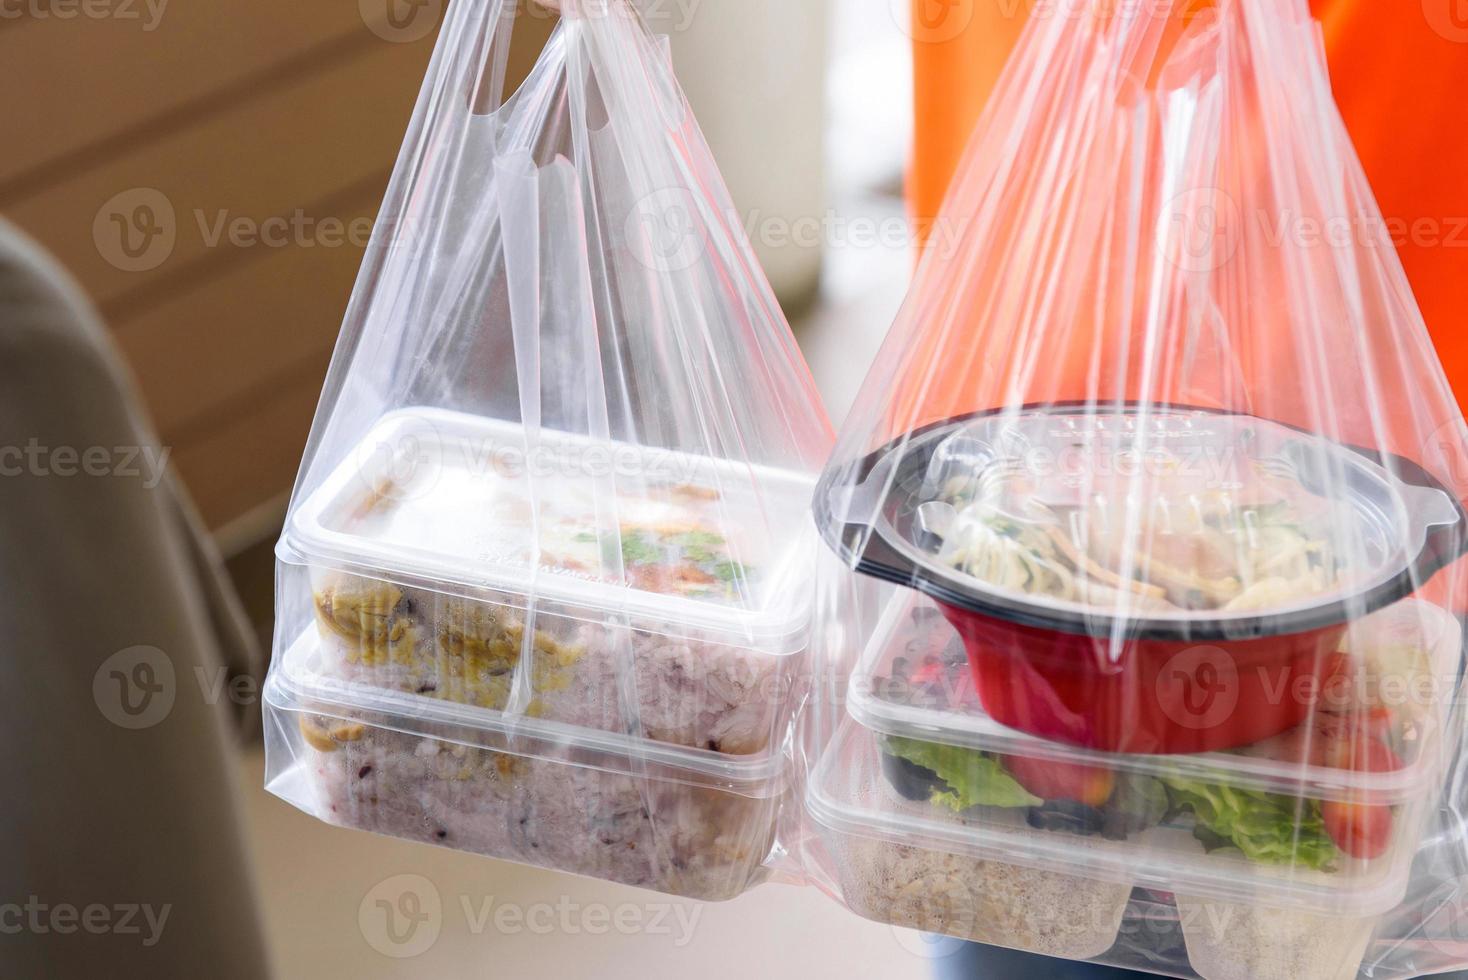 aziatische voedseldozen in plastic zakken thuisbezorgd bij de klant door bezorger foto